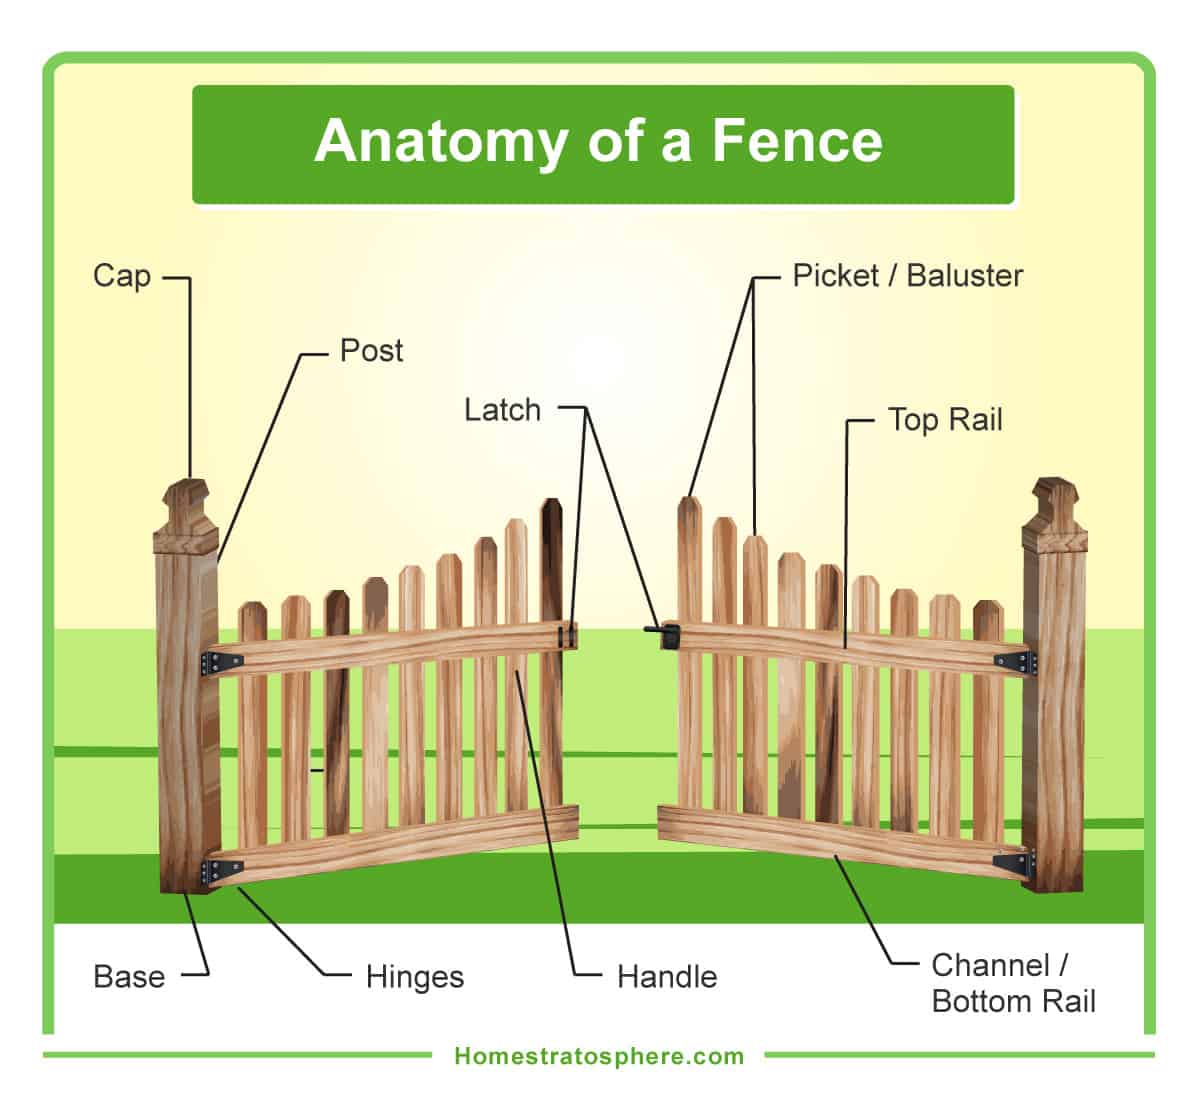 木栅栏和木门的部分(图表)